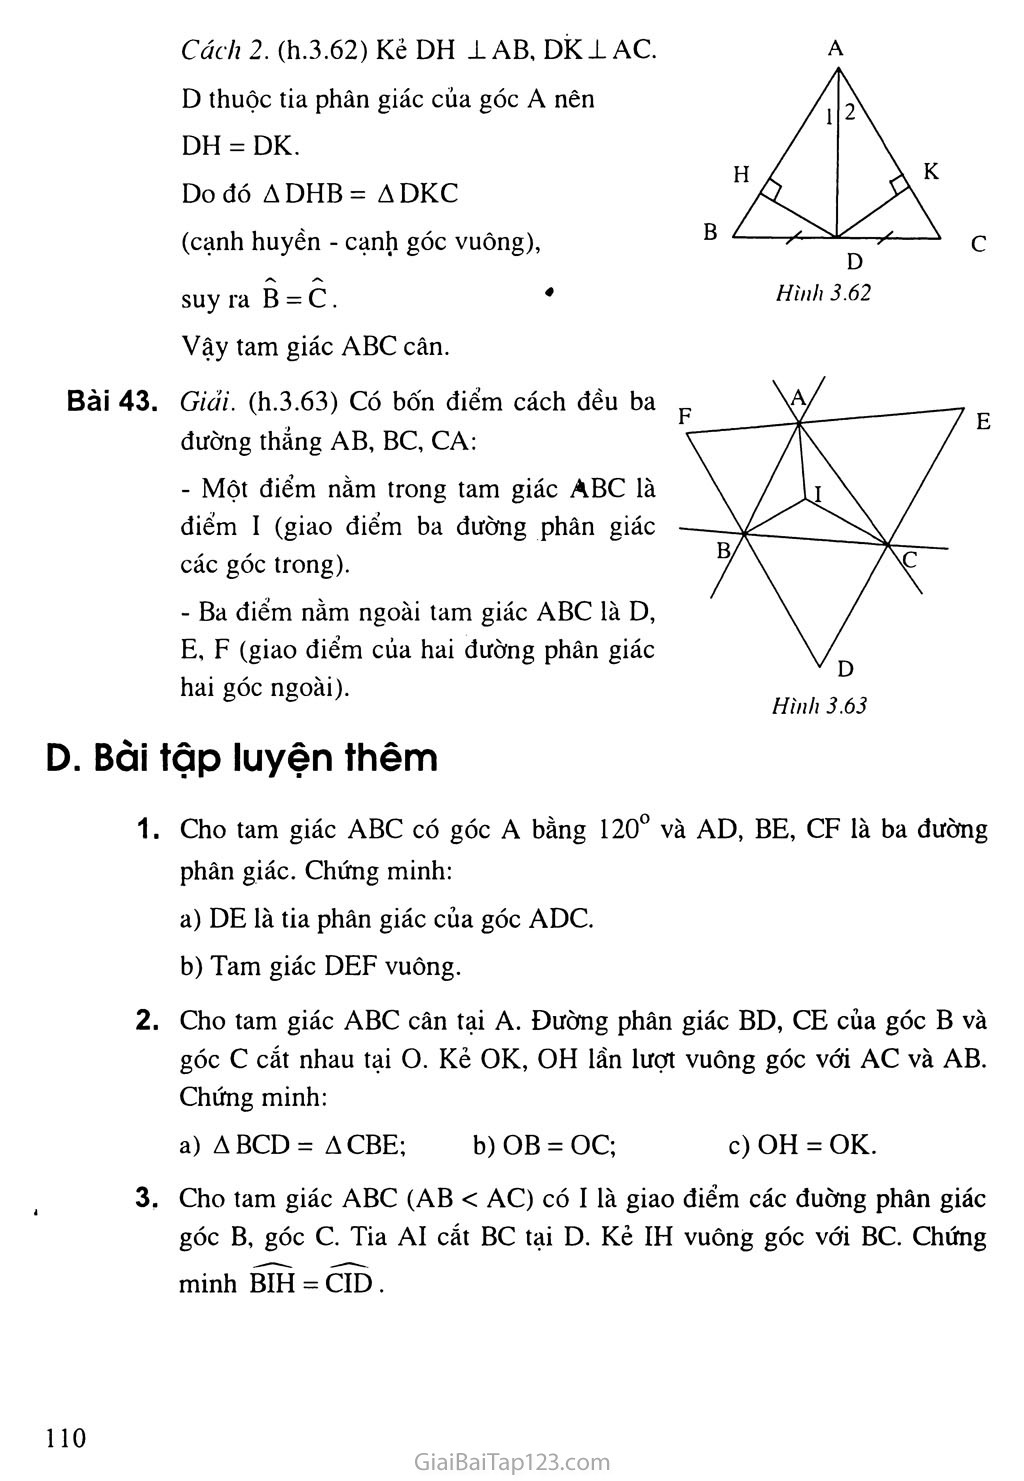 Bài 6. Tính chất ba đường phân giác của một tam giác trang 5